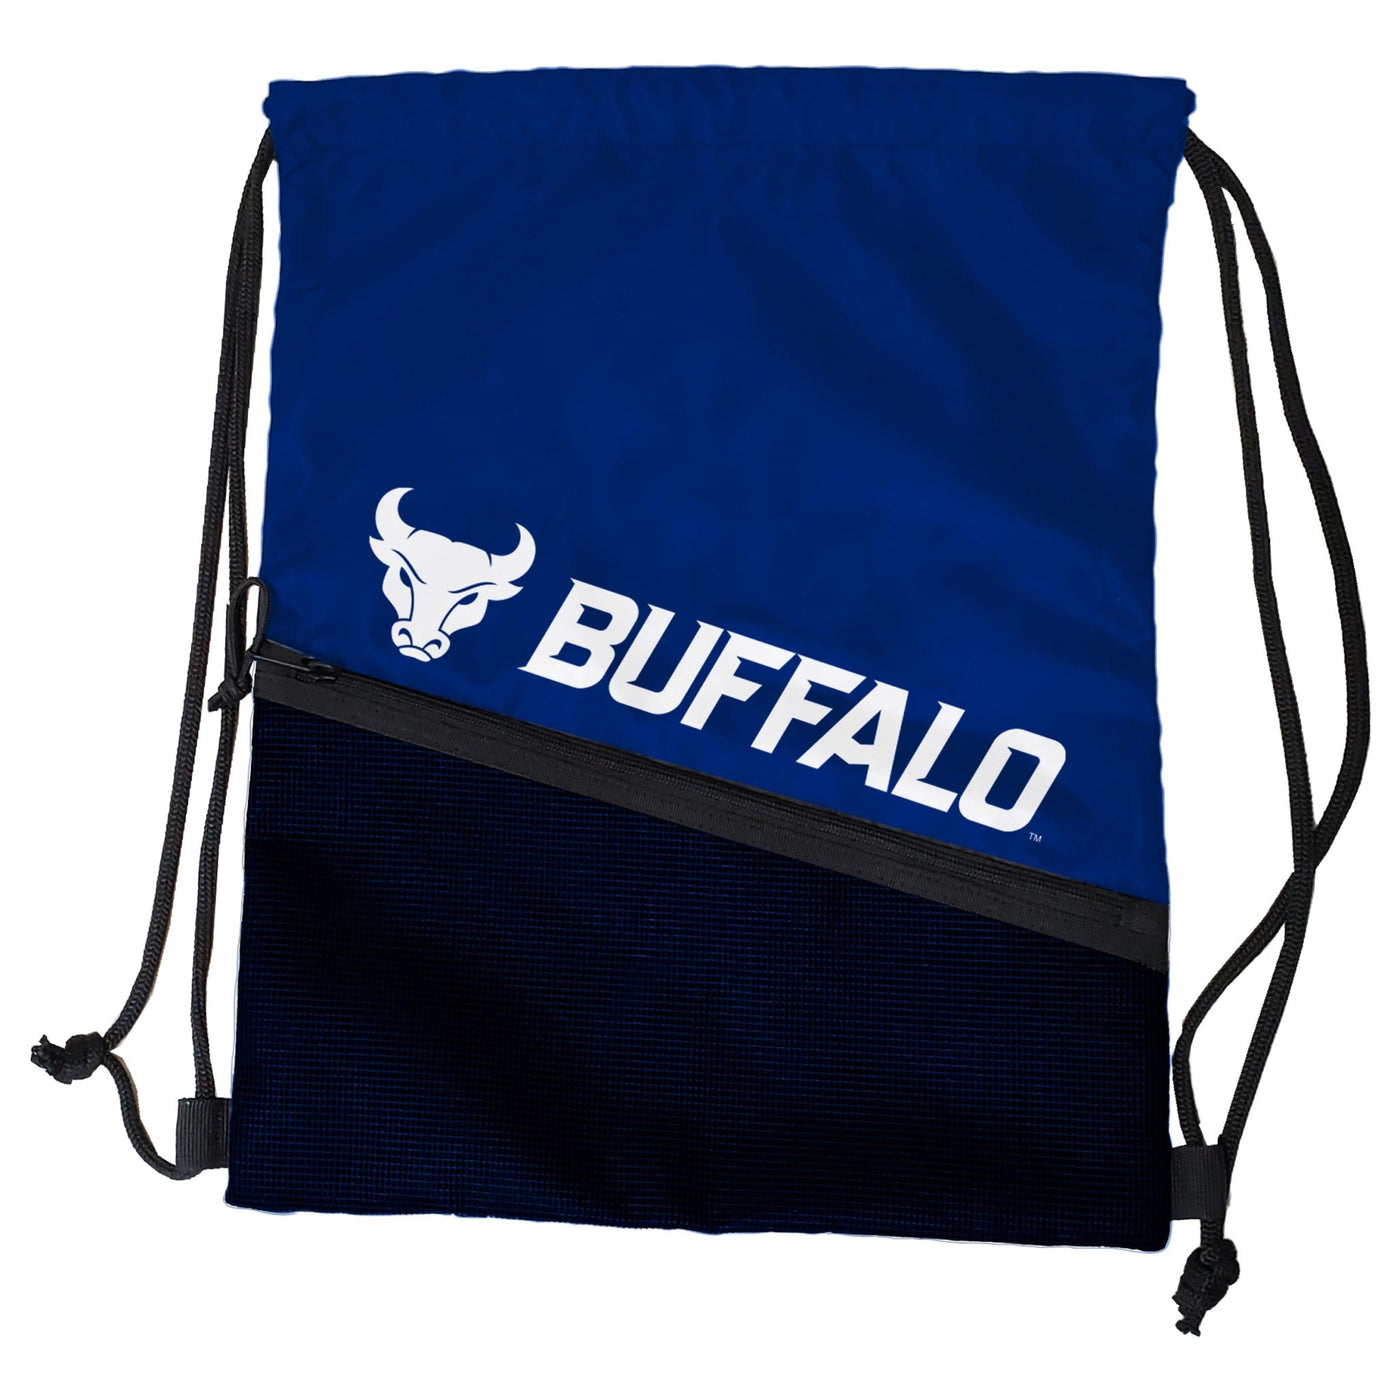 Buffalo (SUNY) Tilt Backsack - Logo Brands